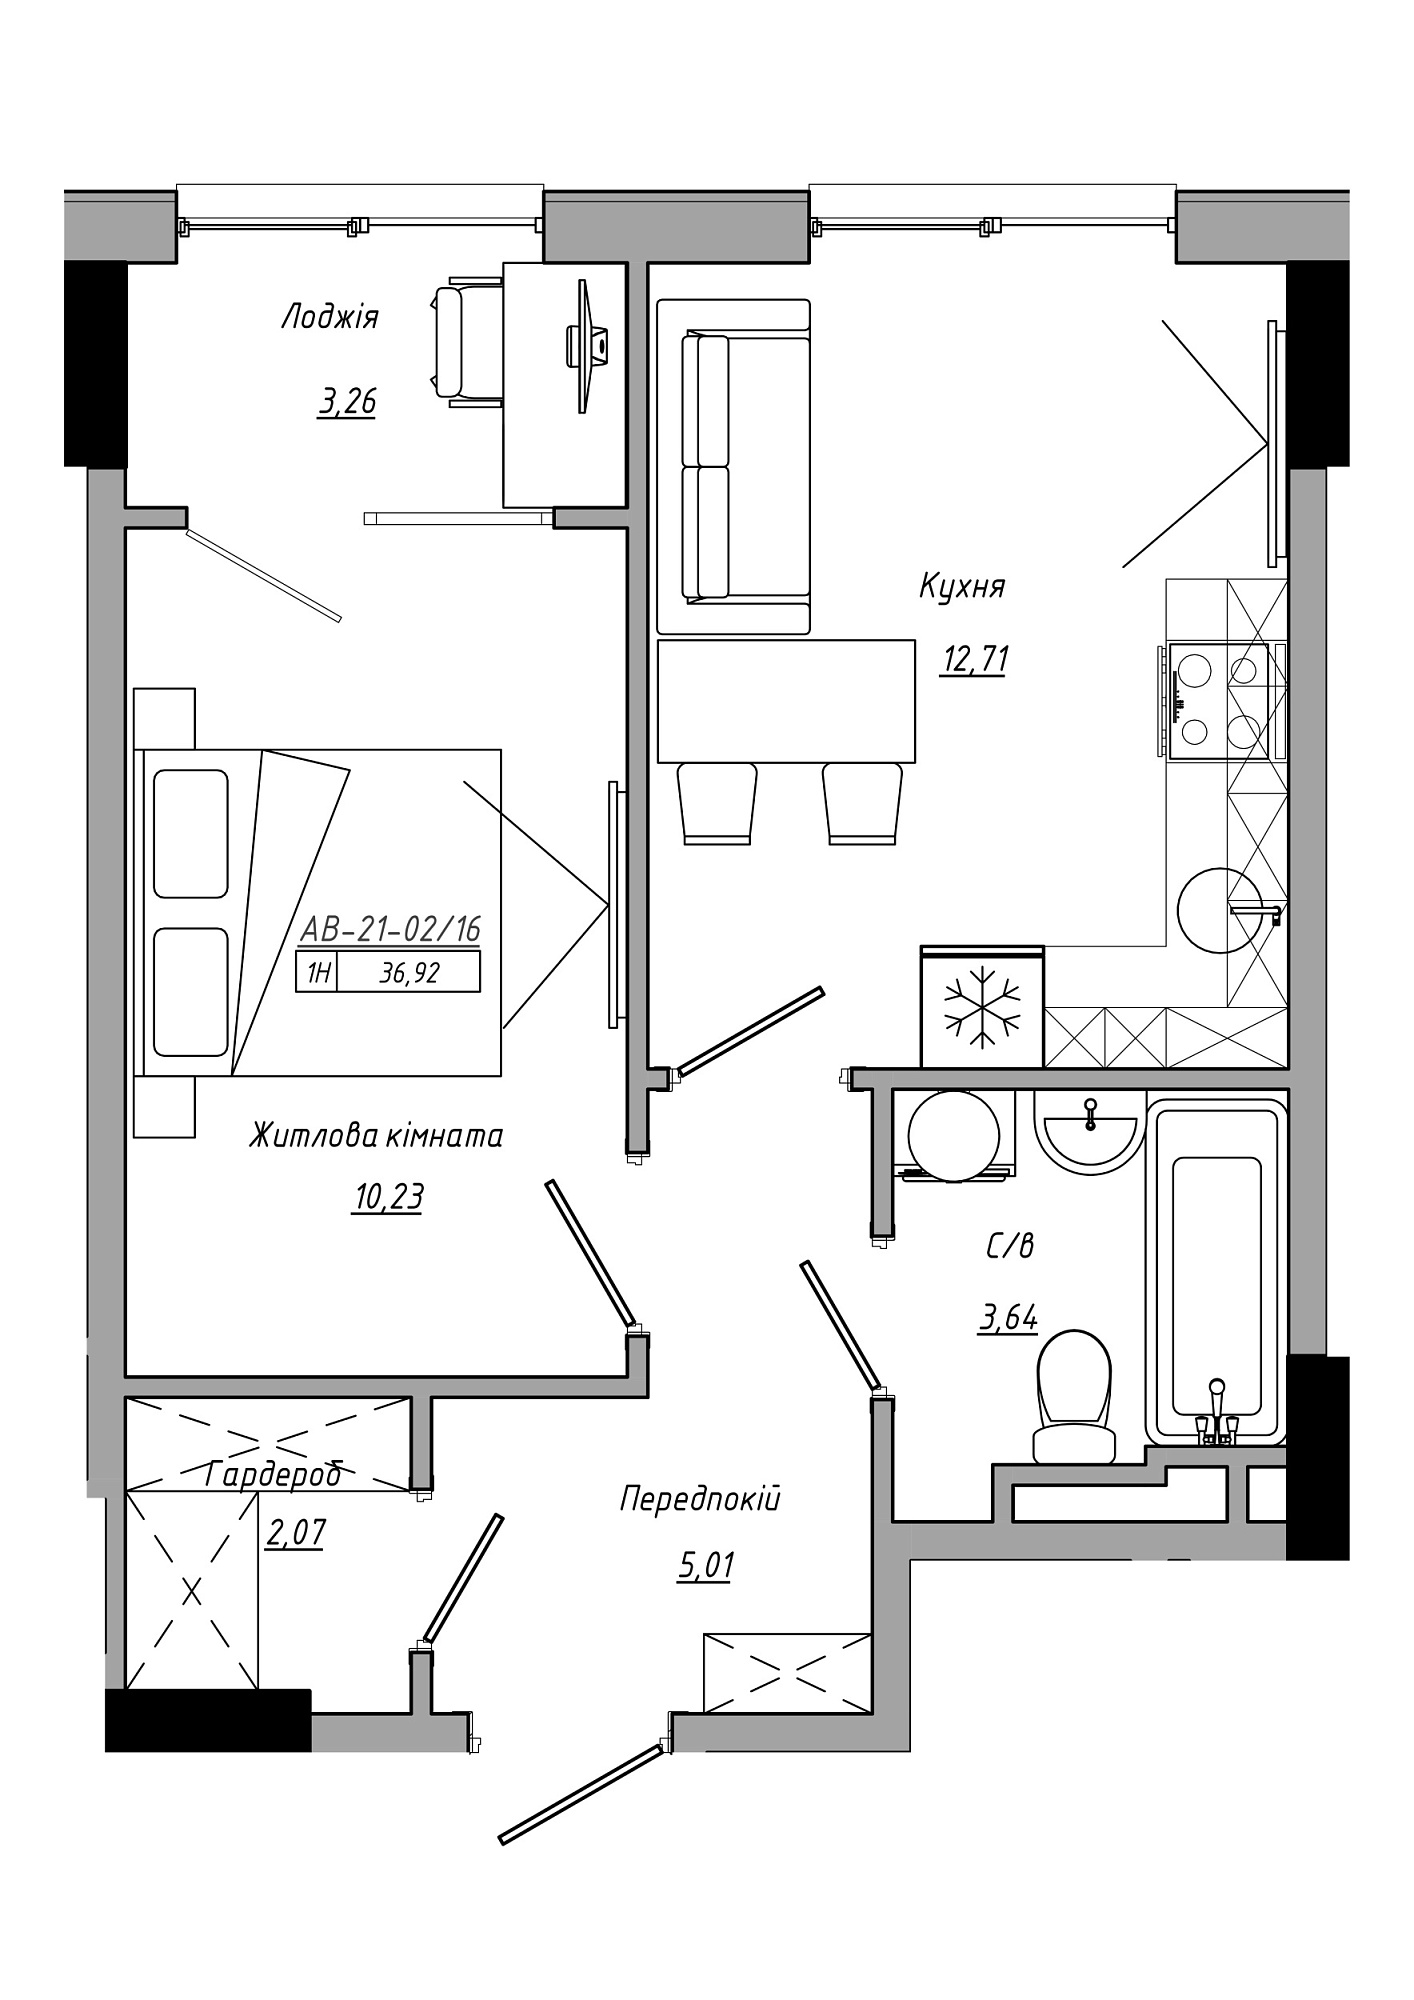 Планування 1-к квартира площею 36.92м2, AB-21-02/00016.